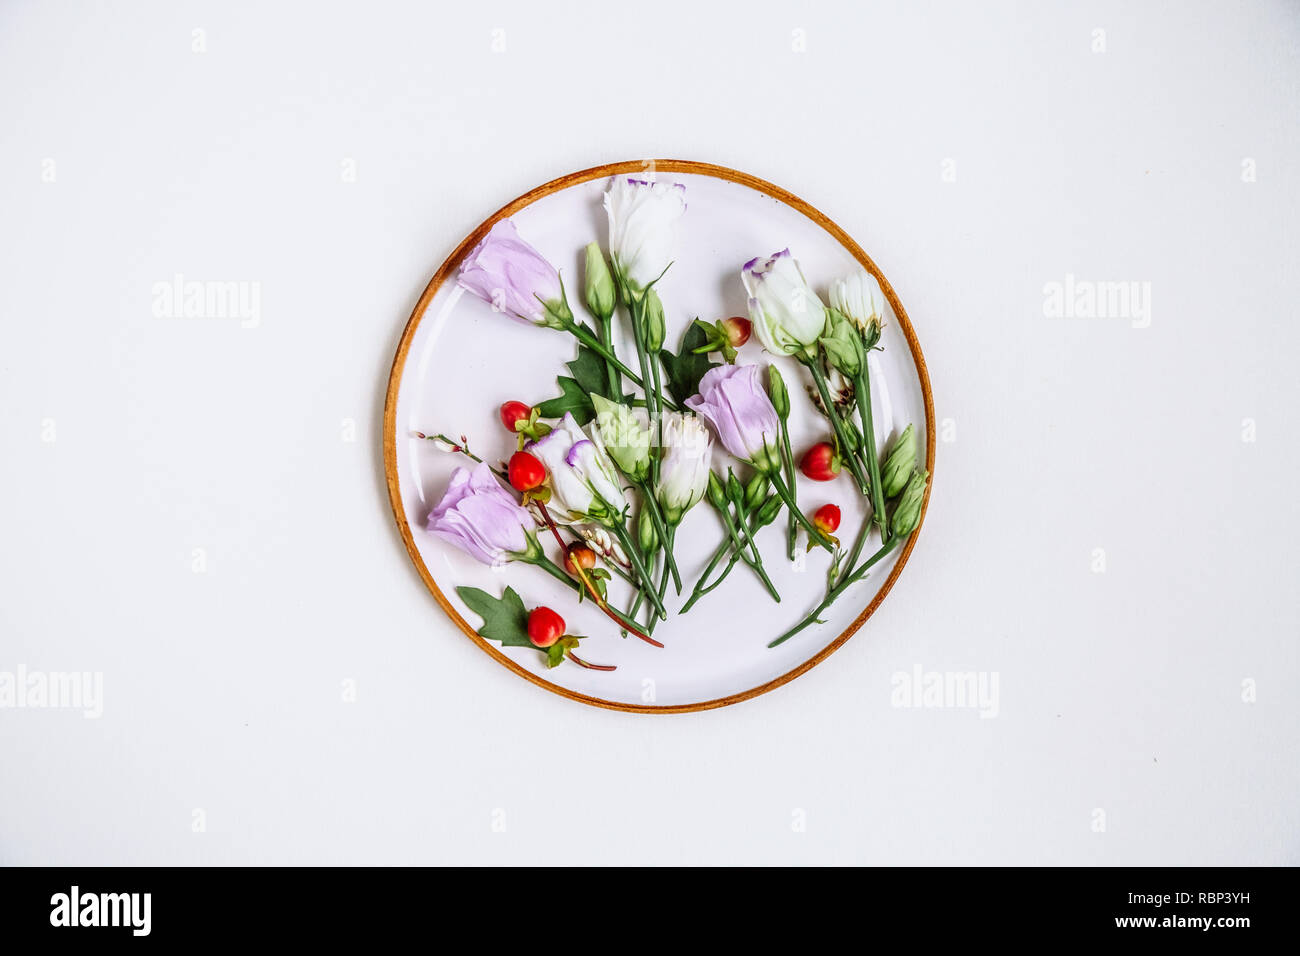 Schöne einzigartige Blume im Kreis Clay Platte auf weißem Hintergrund. Blumenschmuck, Flachbild Styling legen. Ansicht von oben. Kreative still life Idee der Feder wa Stockfoto